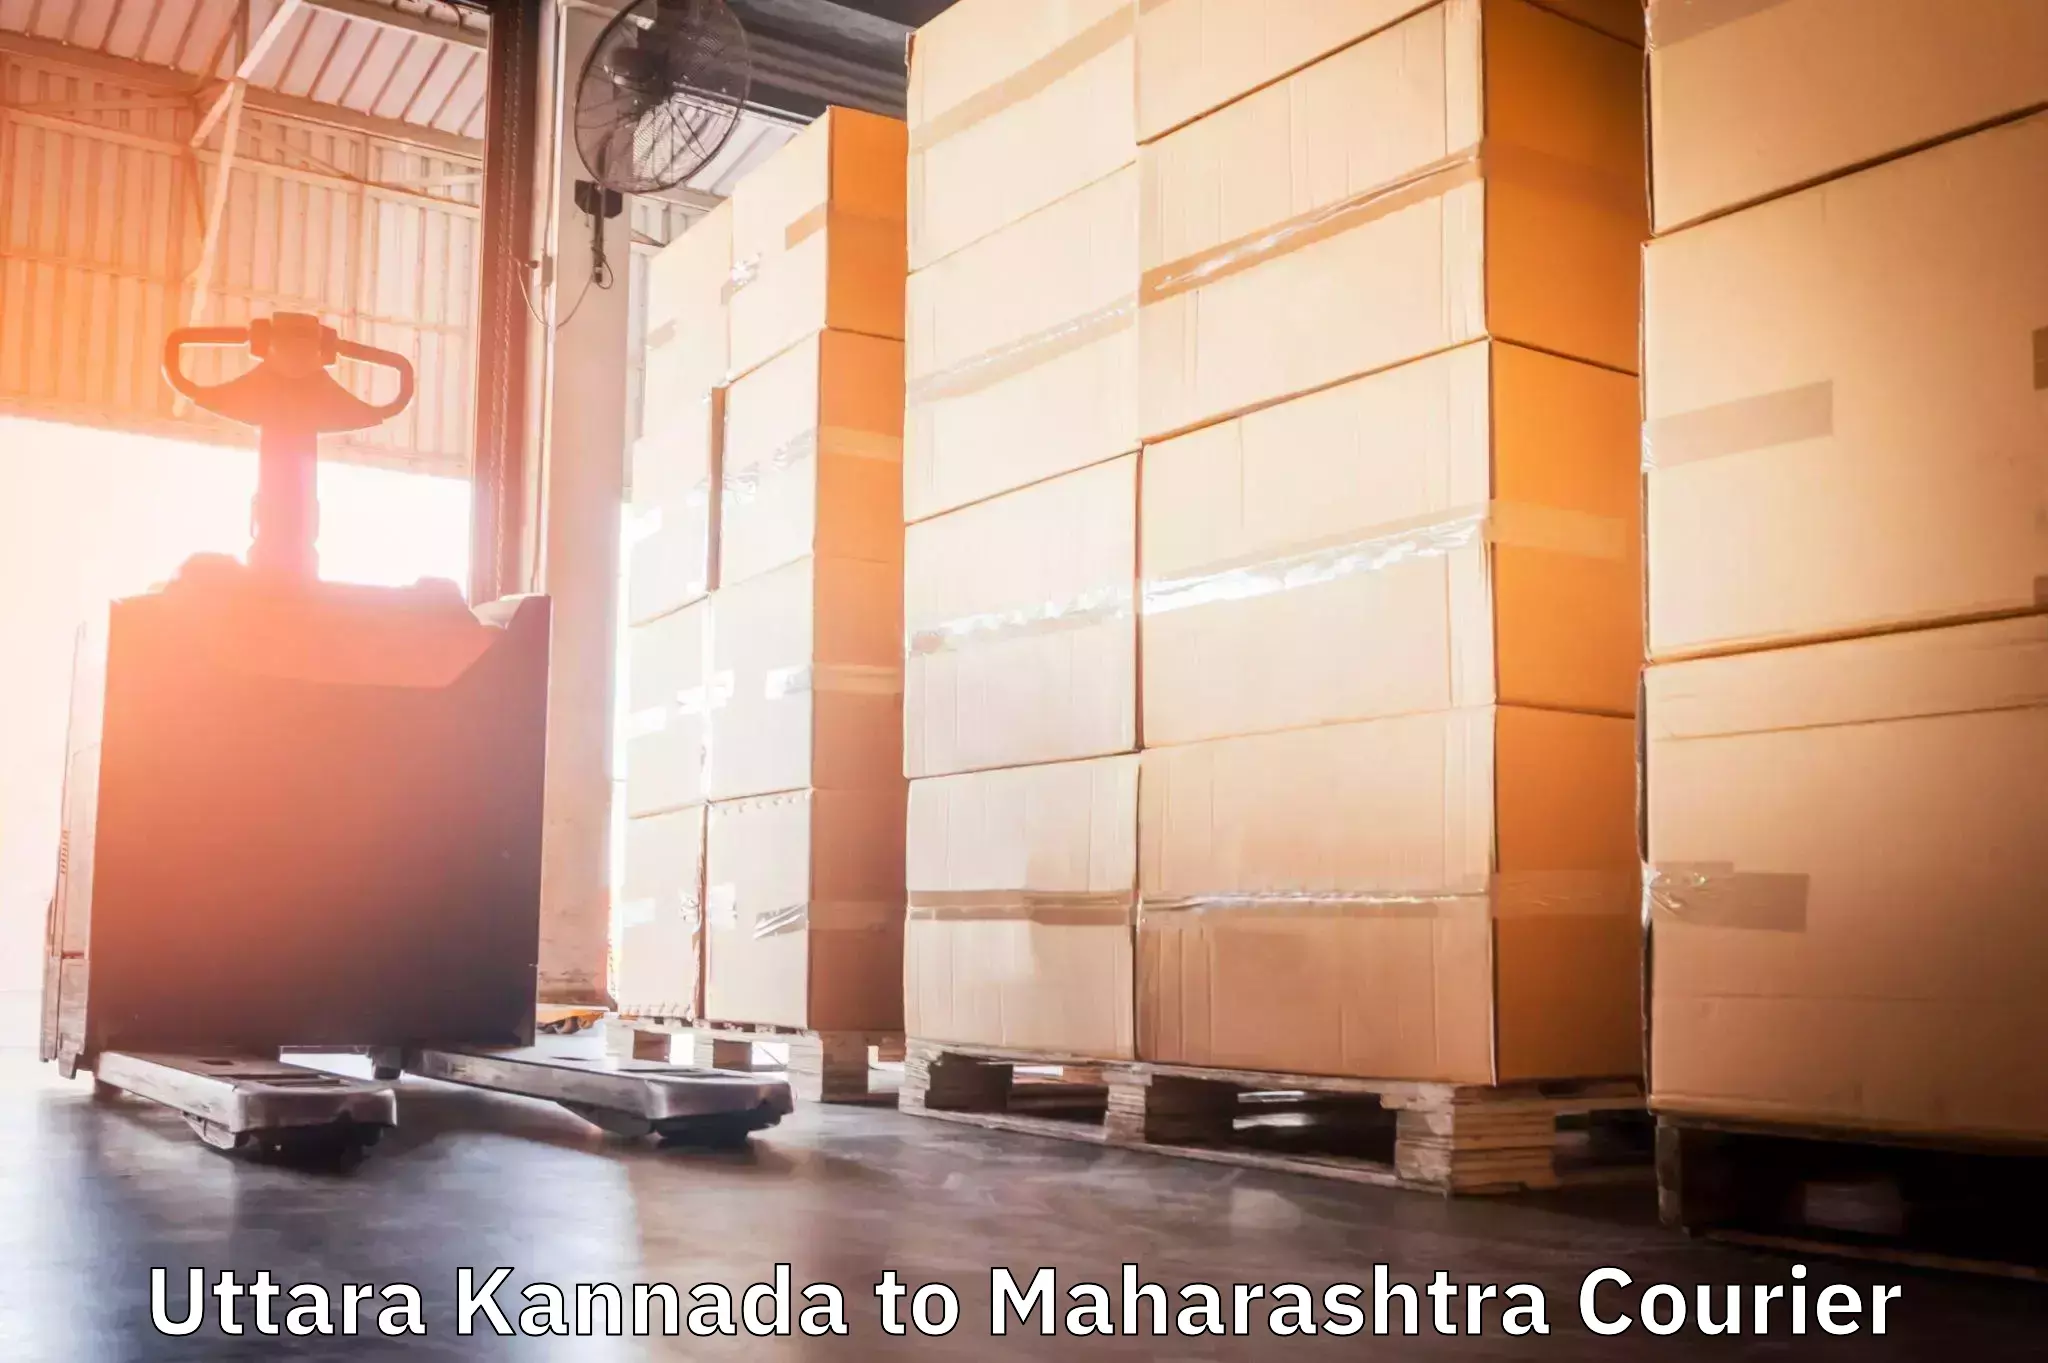 Sustainable courier practices Uttara Kannada to Pimpri Chinchwad